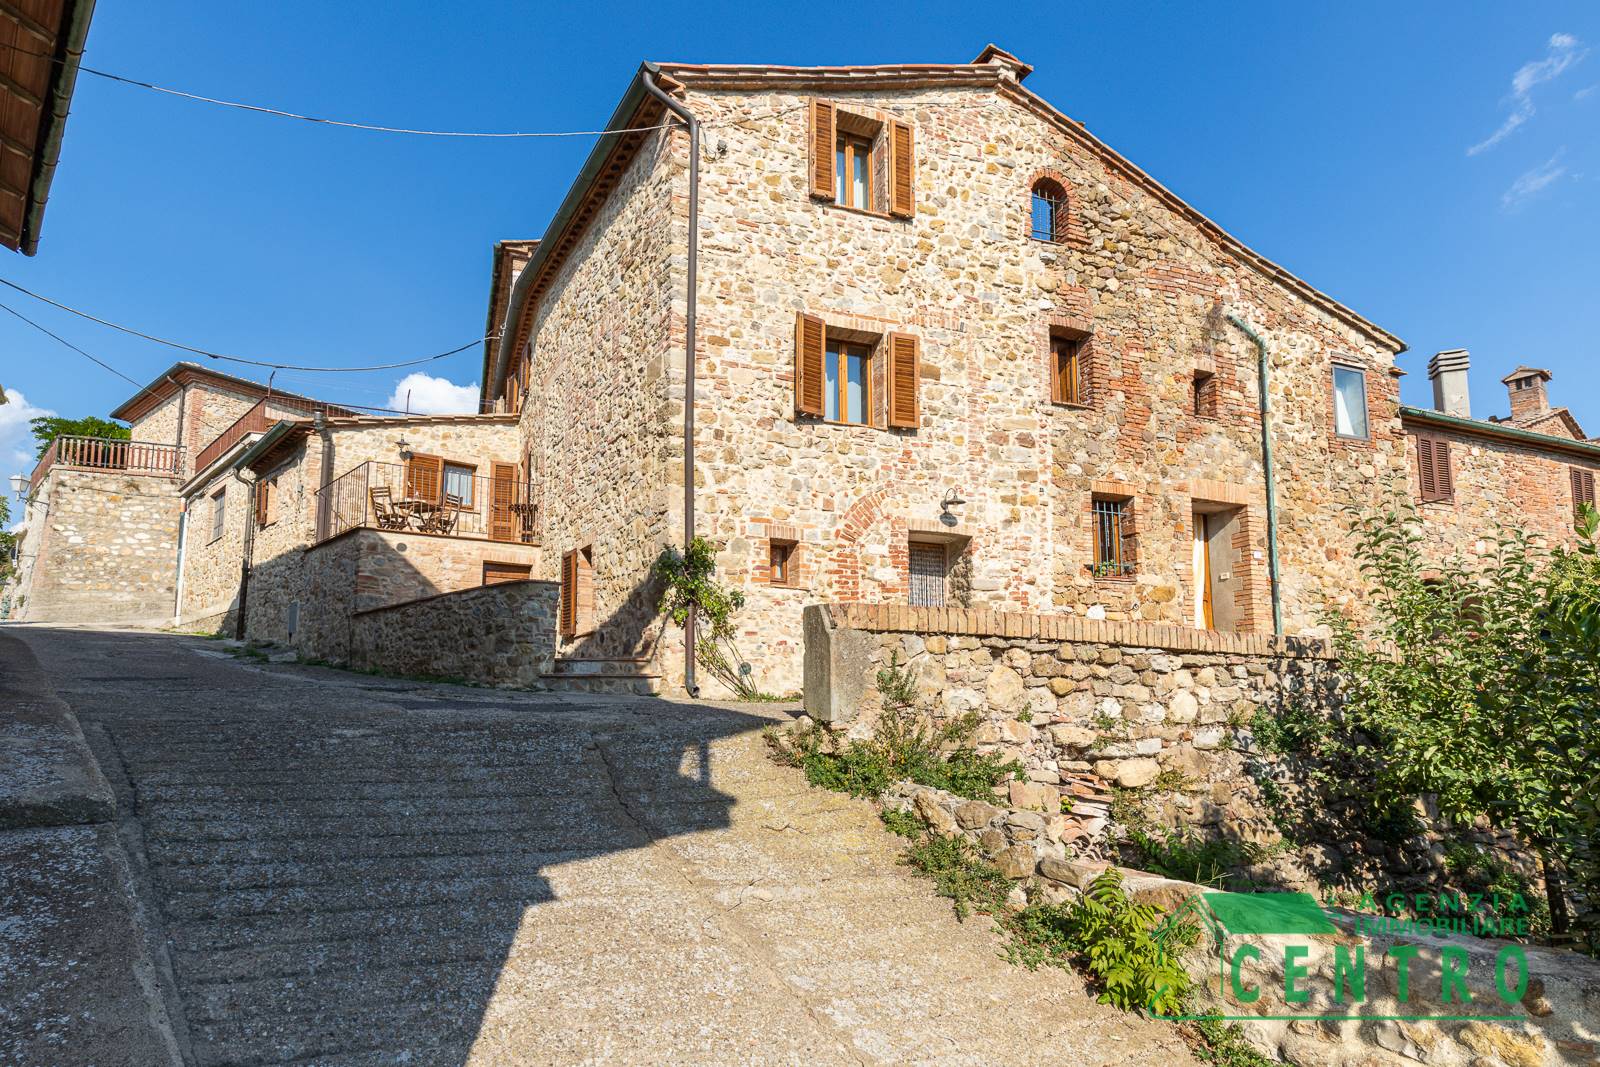 Agenzia Immobiliare Centro Propone in vendita nel borgo medievale di Belforte, comune di Radicondoli, splendido terra-tetto in pietra completamente 